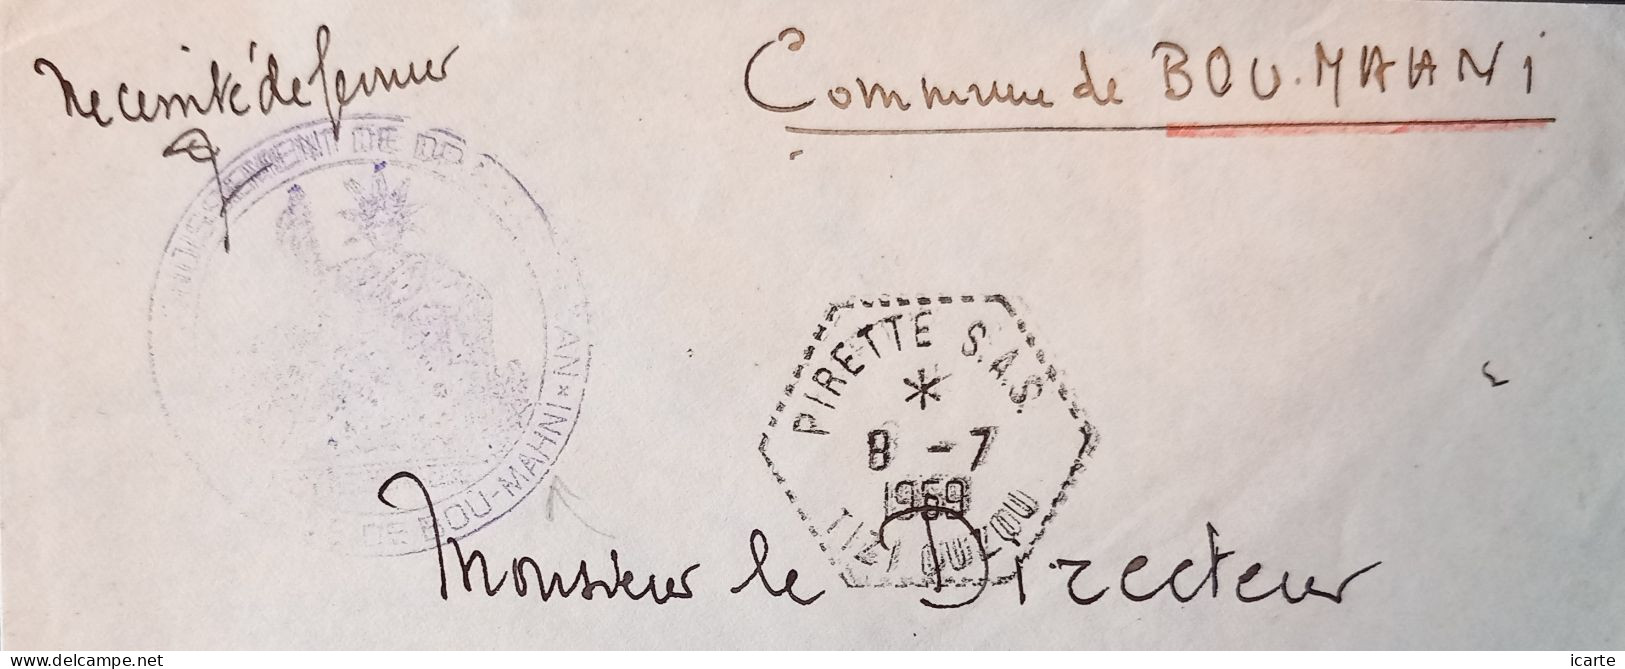 Oblitération Hexagonale Tiretée PIRETTE S.A.S. Et Cachet Bou-Mahni Sur Lettre Du 8-7-1959 - Guerre D'Algérie